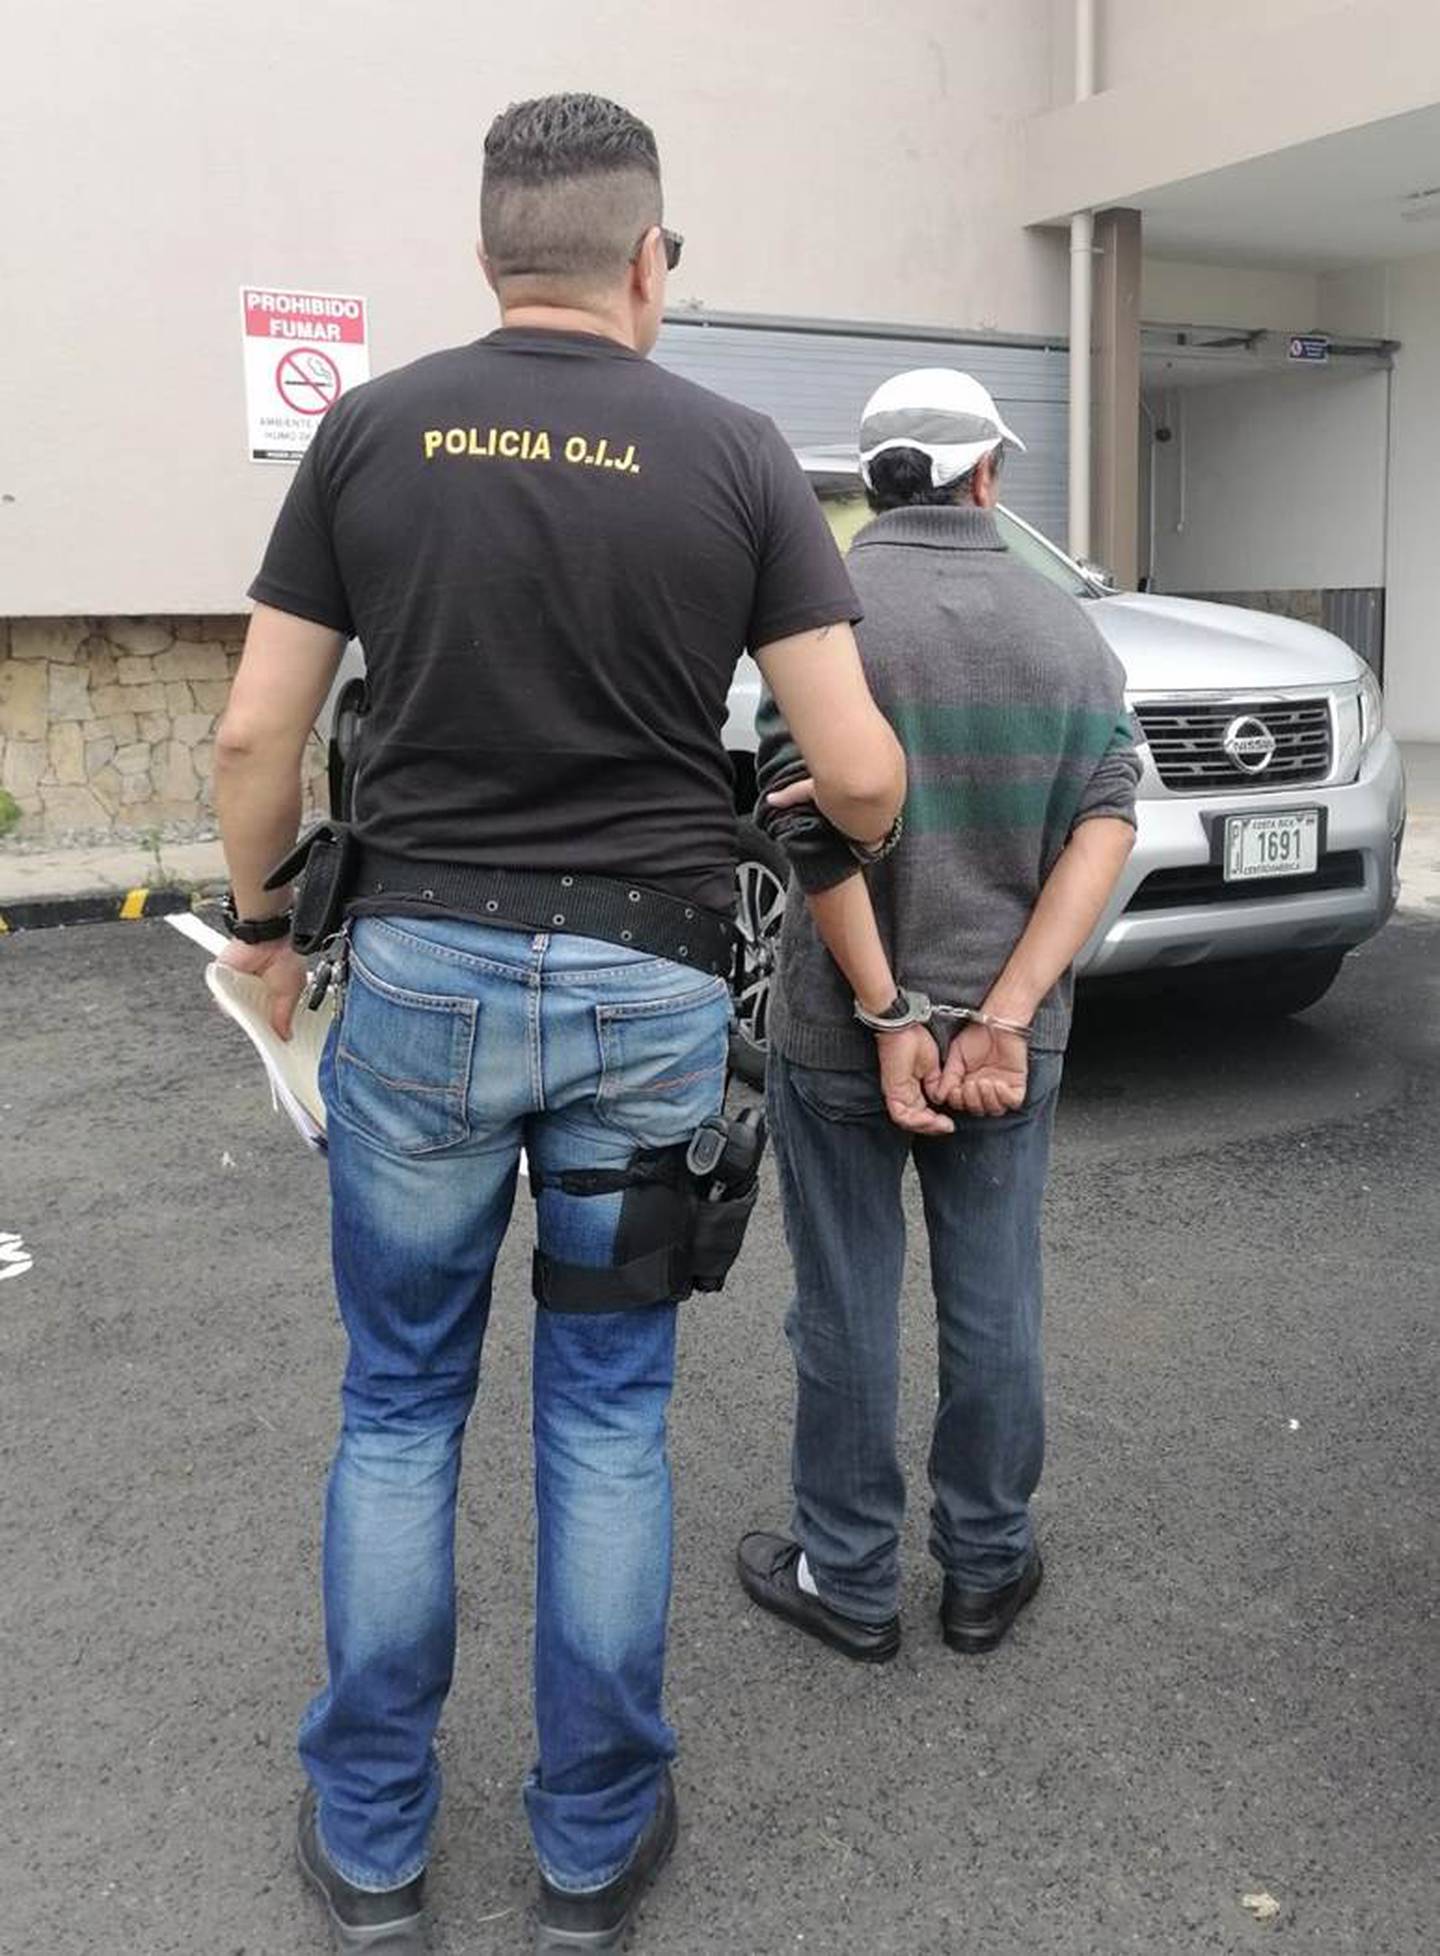 El sospechoso fue detenido este lunes en Guadalupe de Cartago. Foto OIJ.